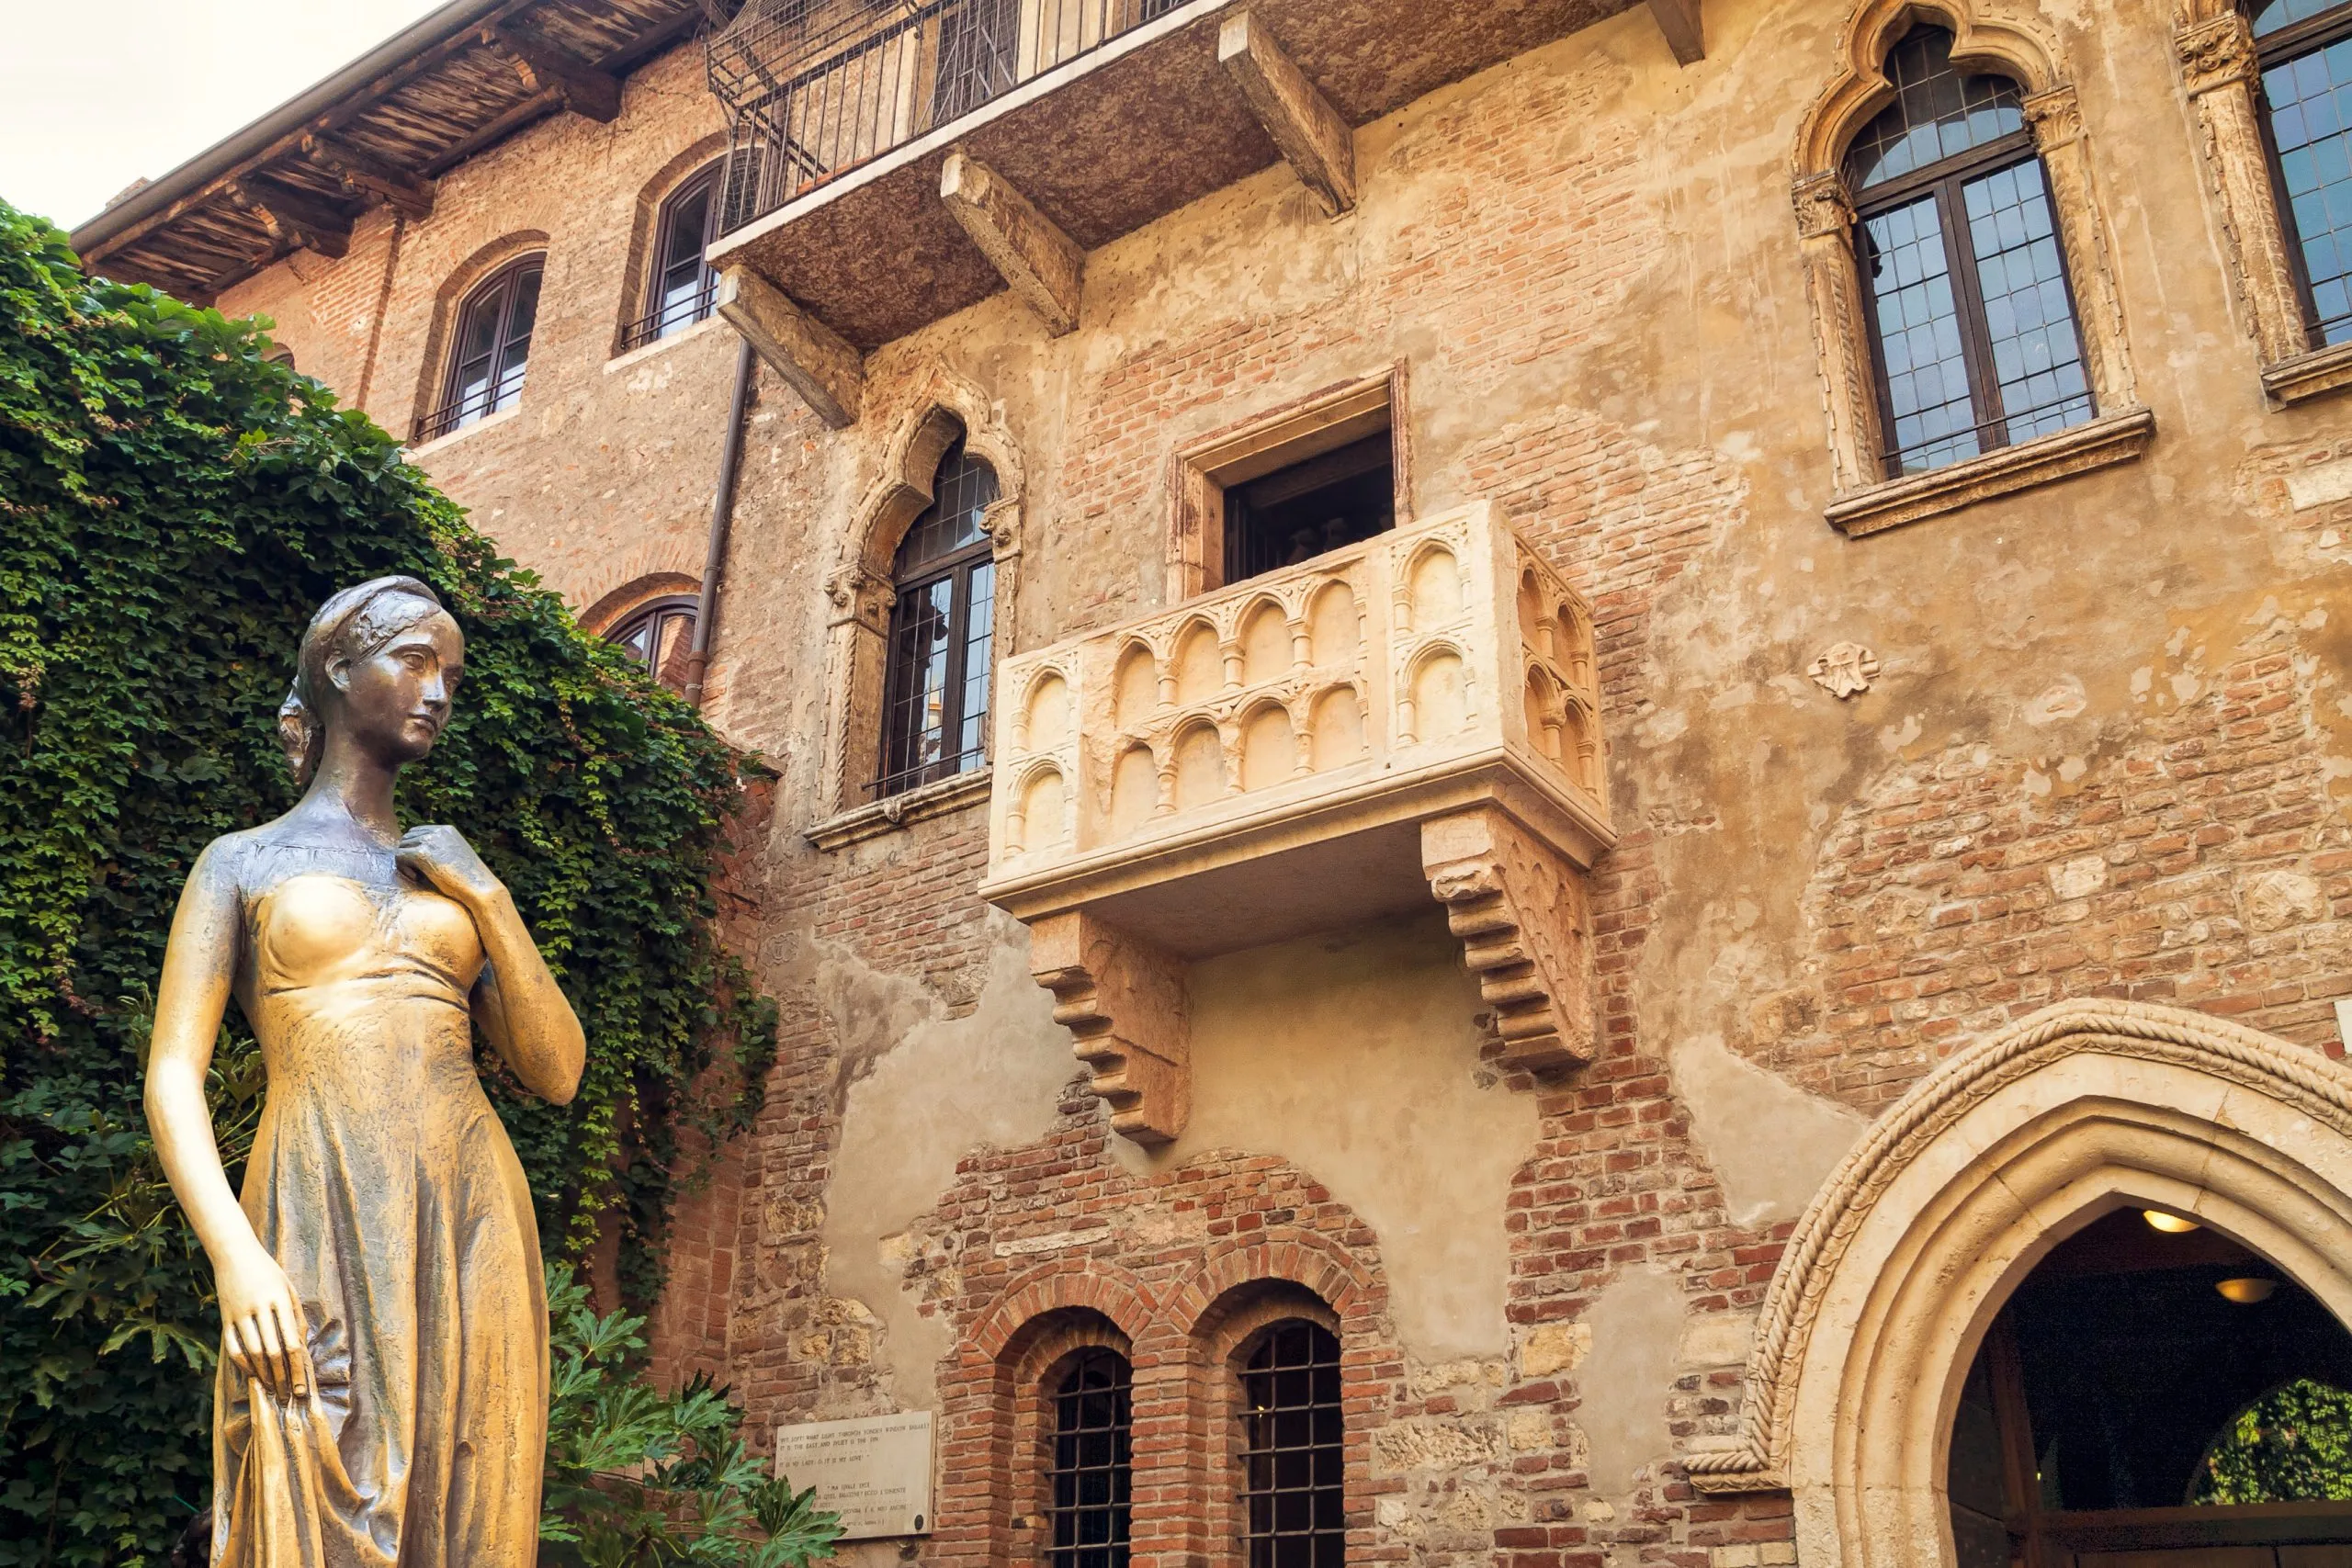 Bronzestatue af Julie og balkon ved Julies hus, Verona, Italien.